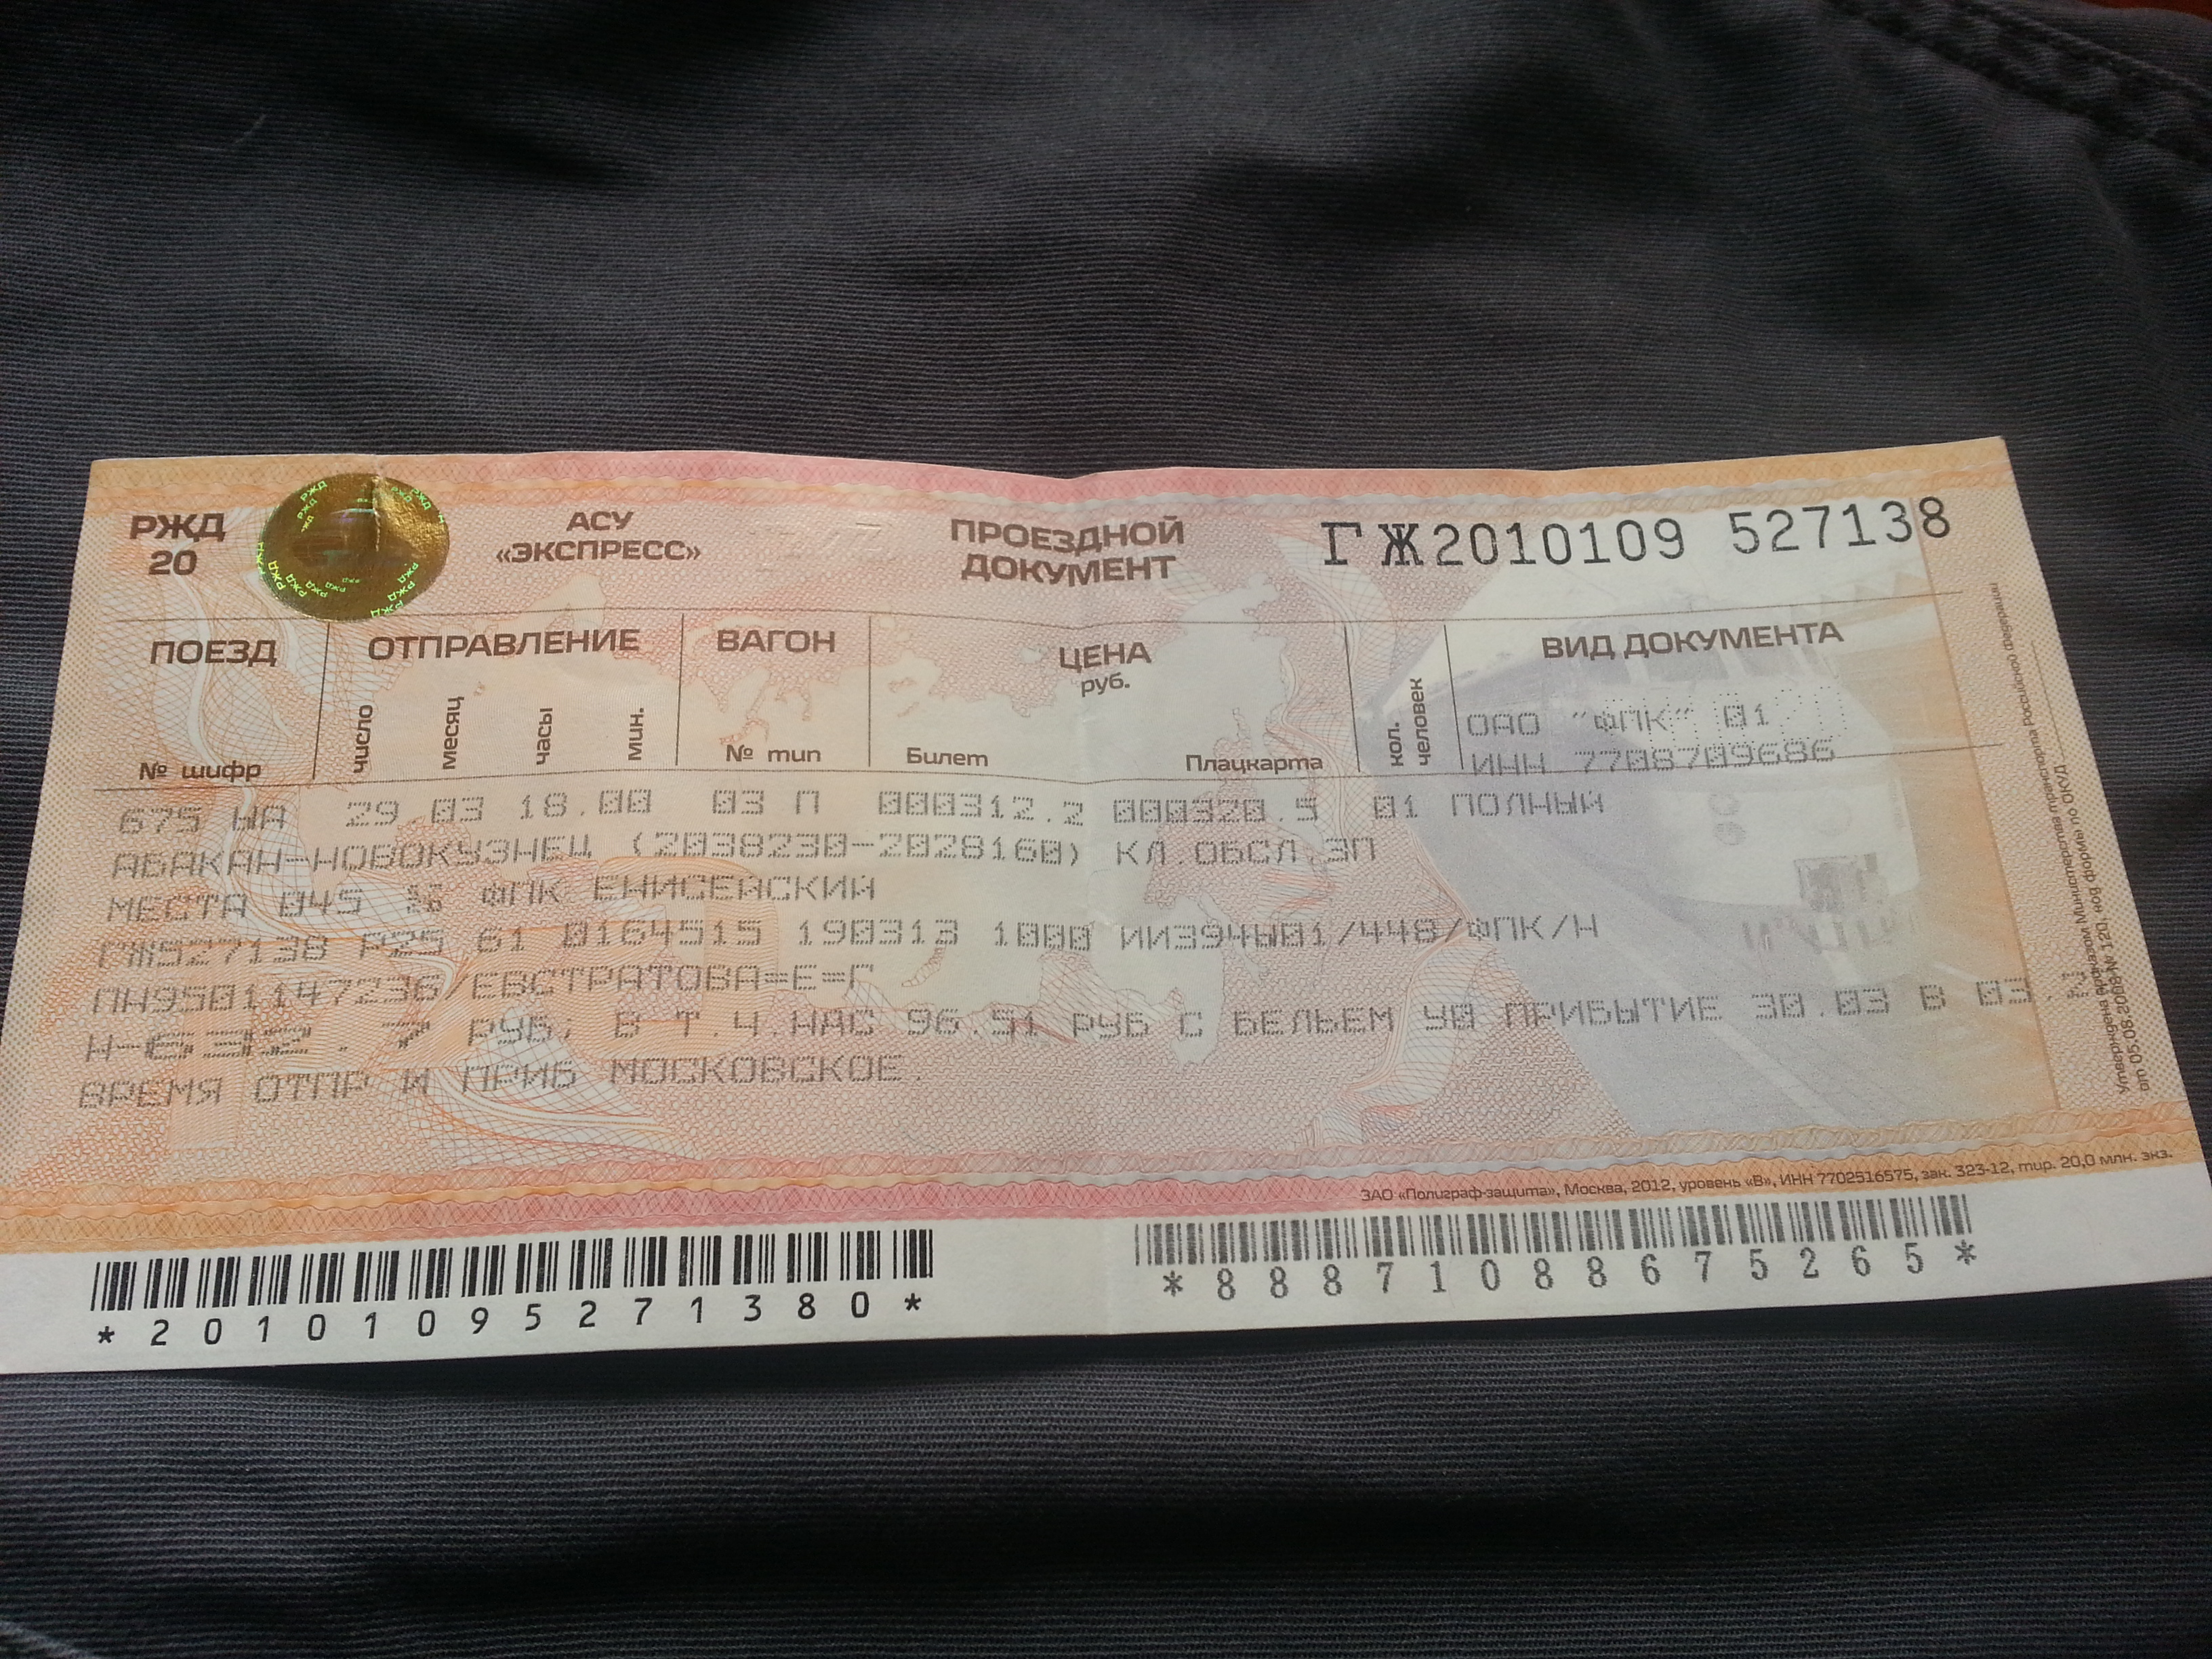 Екатеринбург барнаул жд билеты. ЖД билеты. Билет на поезд. Билеты ЖД на поезд. Фотография билета на поезд.